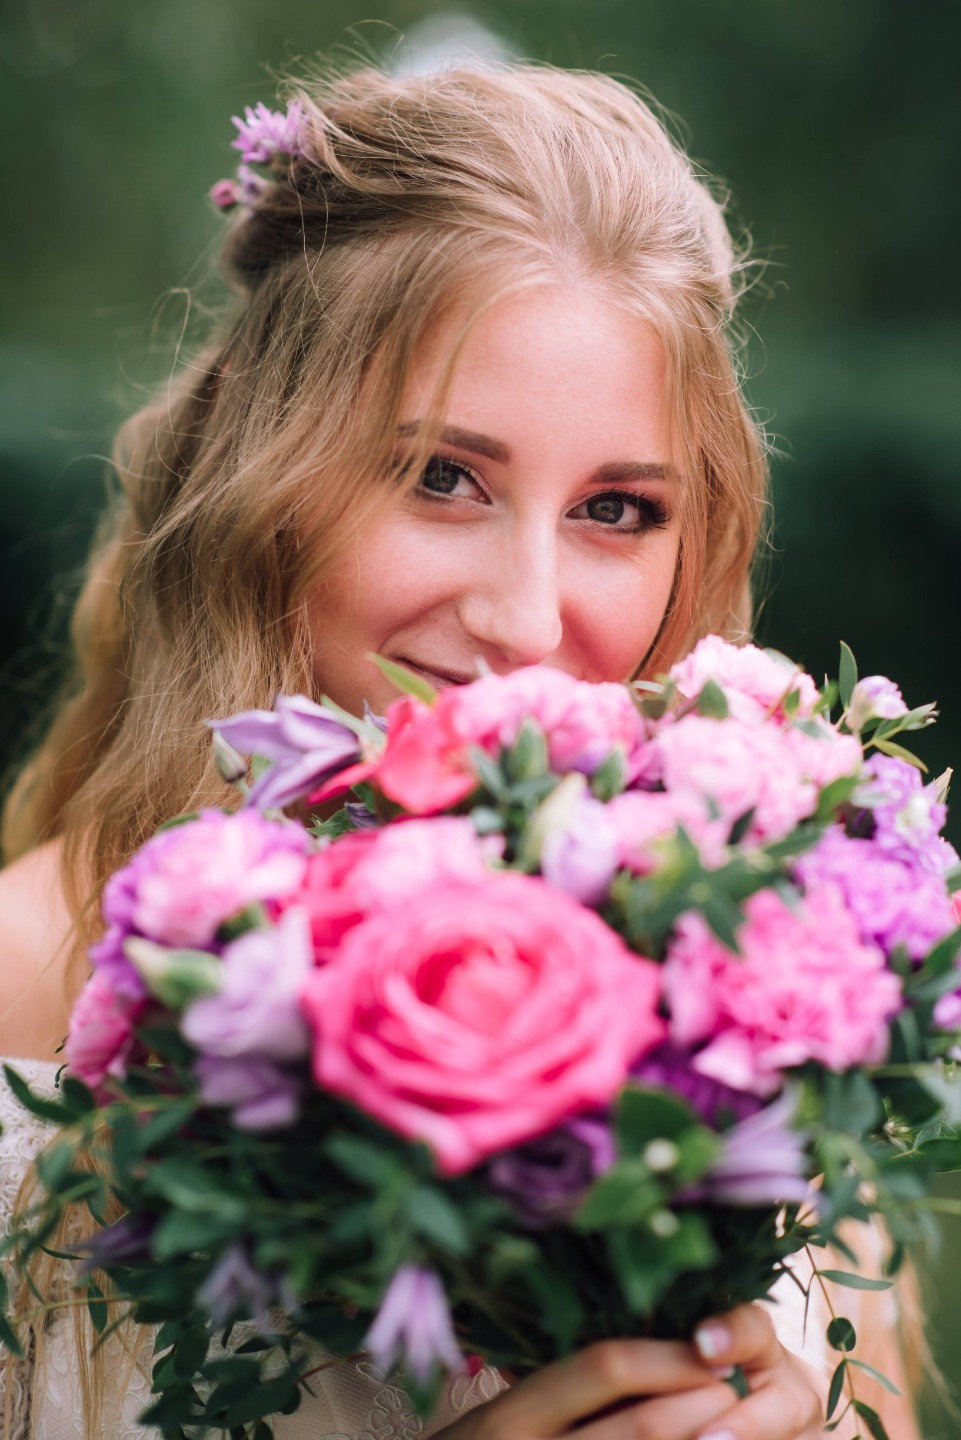 ФОТО ИЗ СТАТЬИ: Романтическая свадьба в розово-фиолетовых оттенках